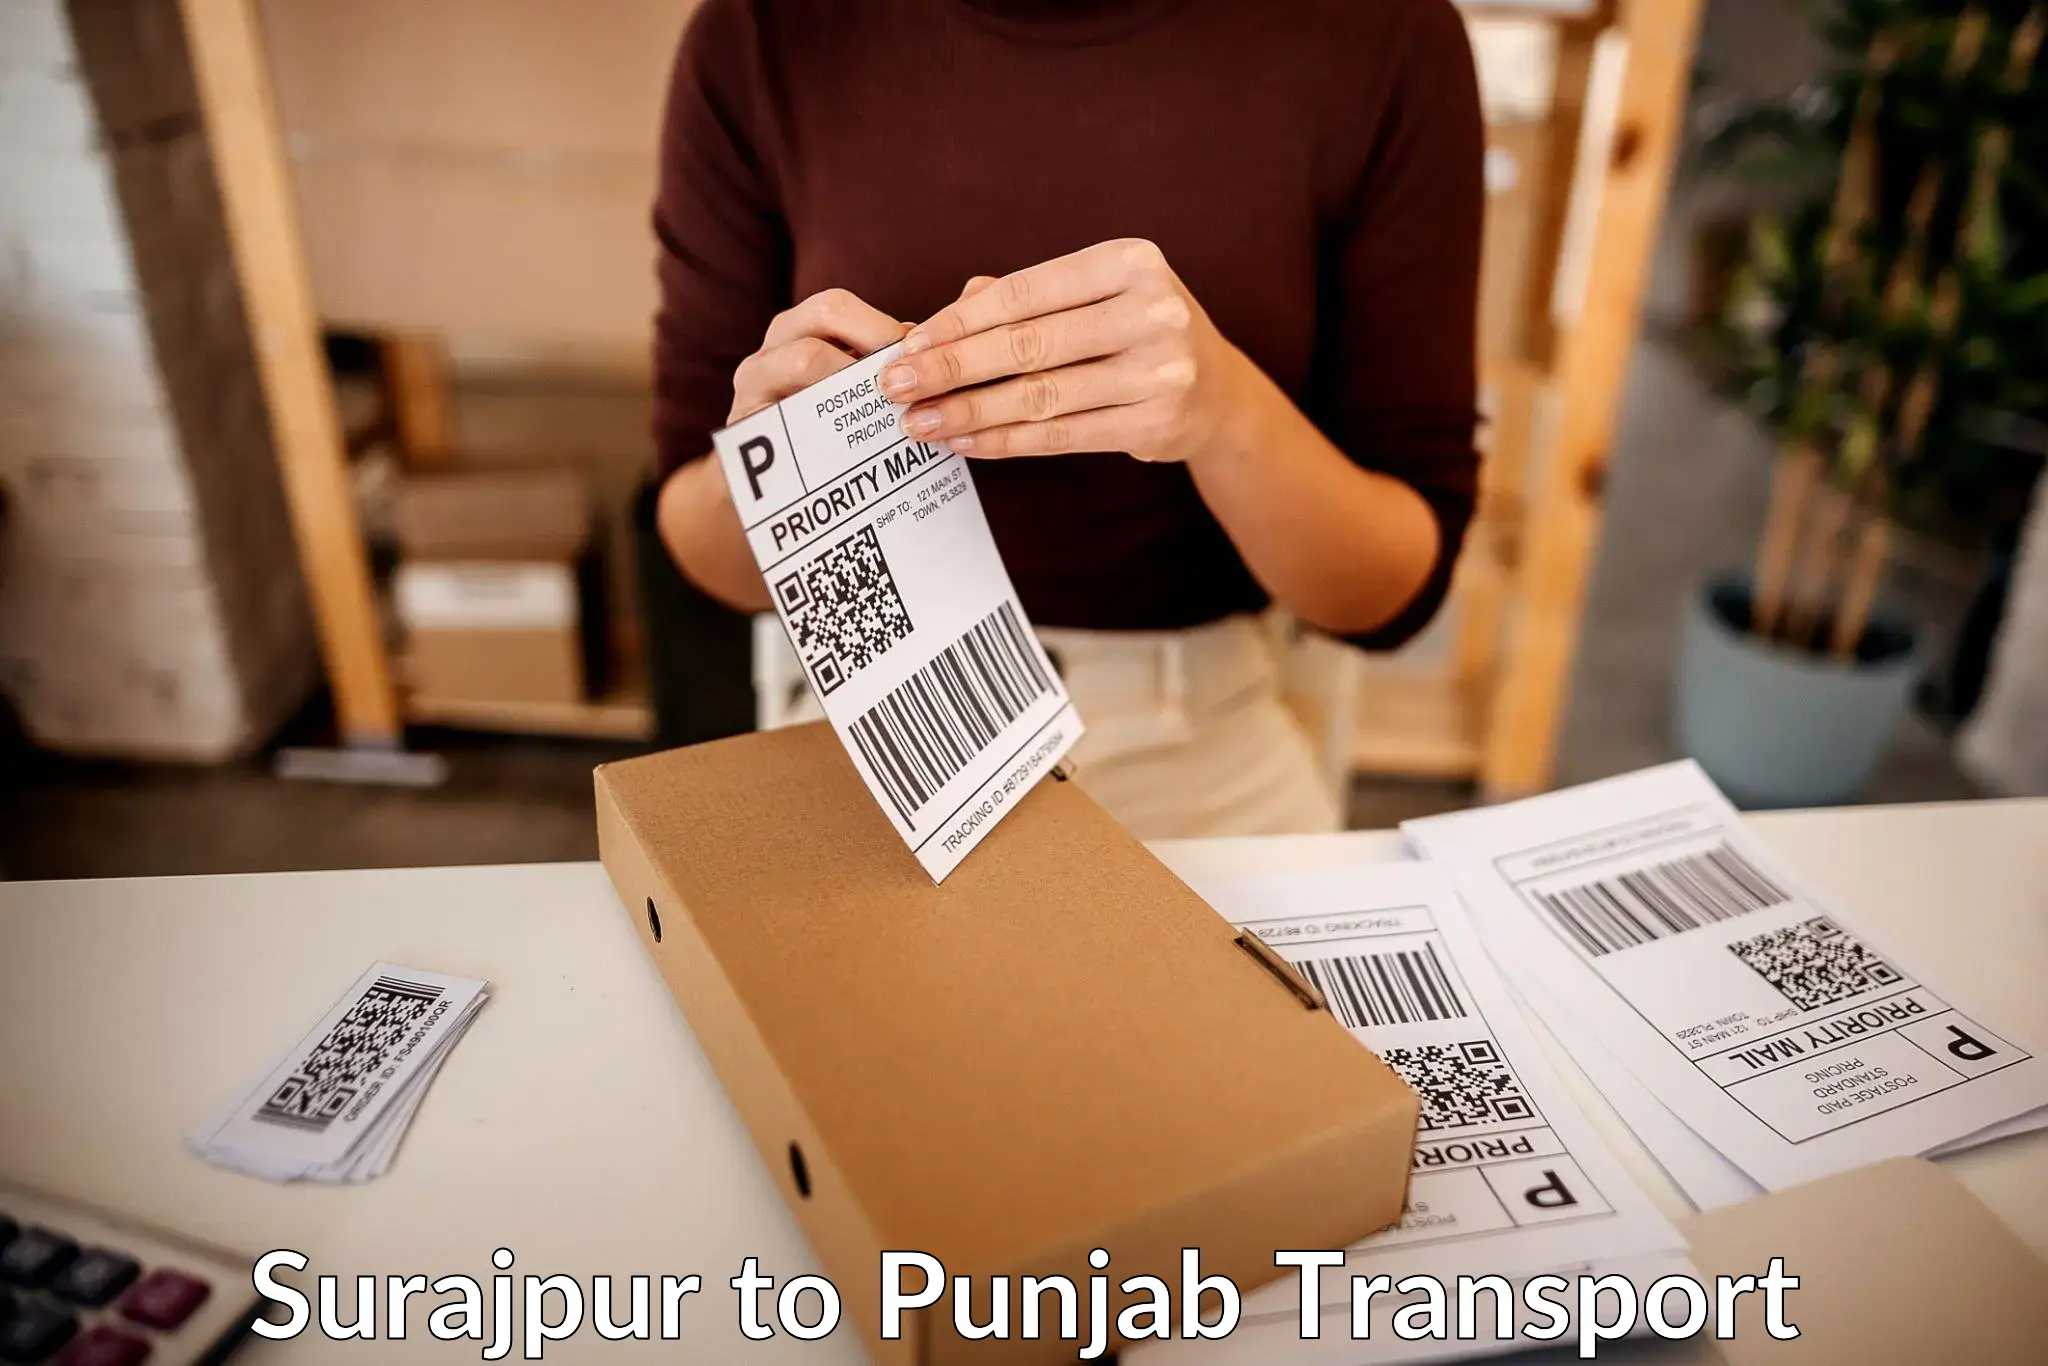 Transport in sharing Surajpur to Sirhind Fatehgarh